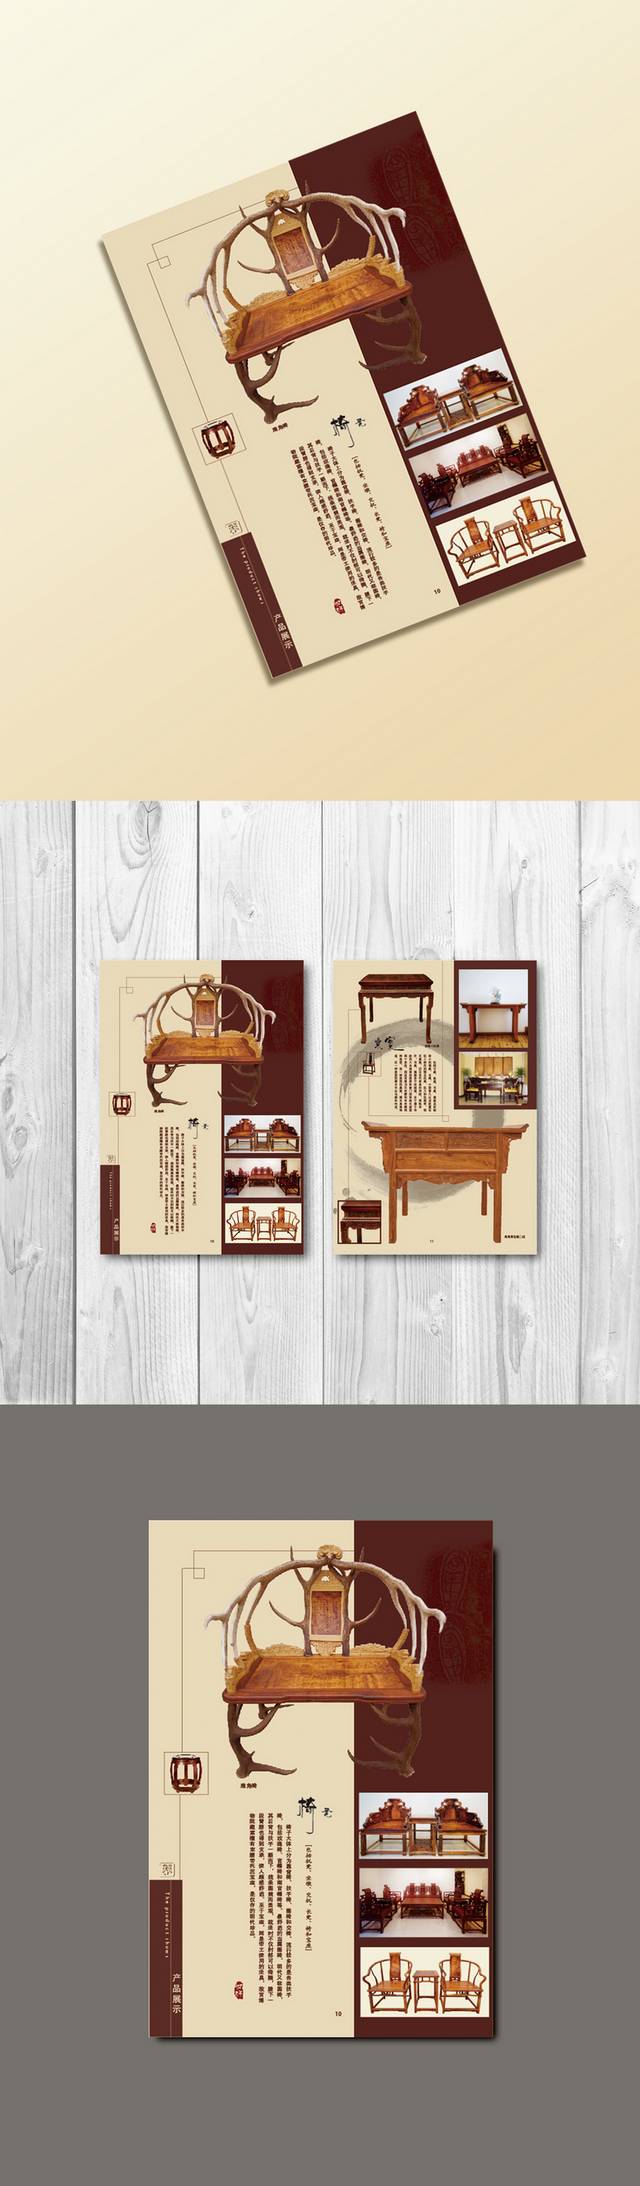 高档红木家具手册宣传设计